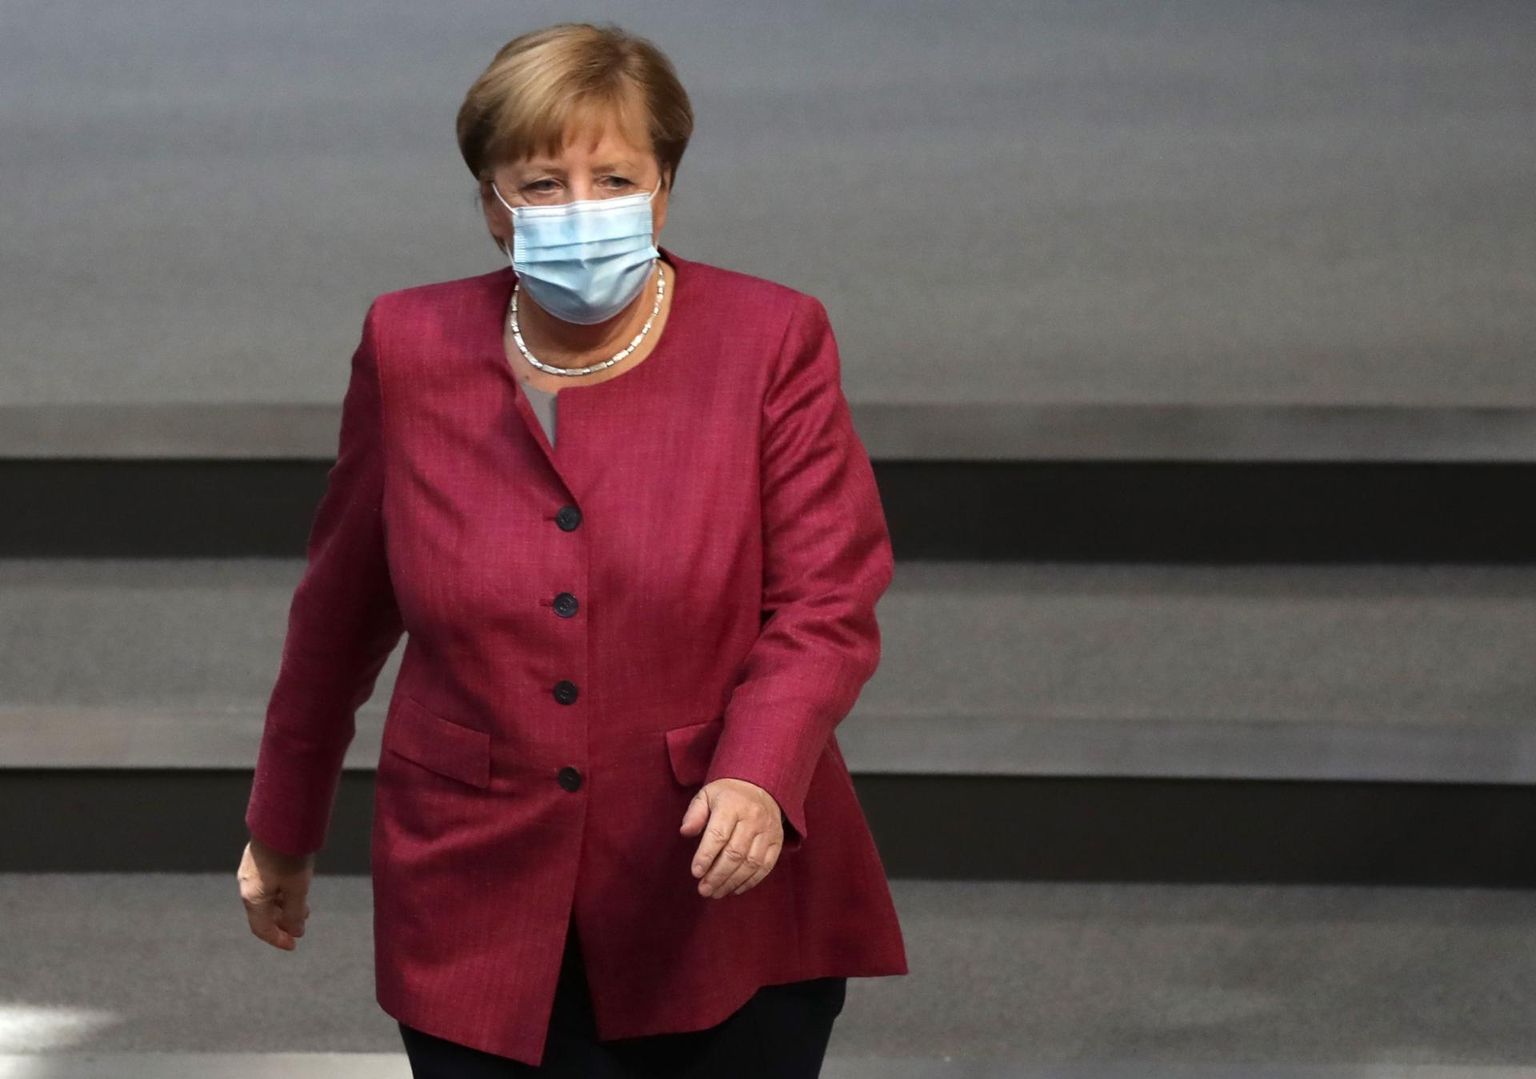 Saksamaa liidukantsler Angela Merkel